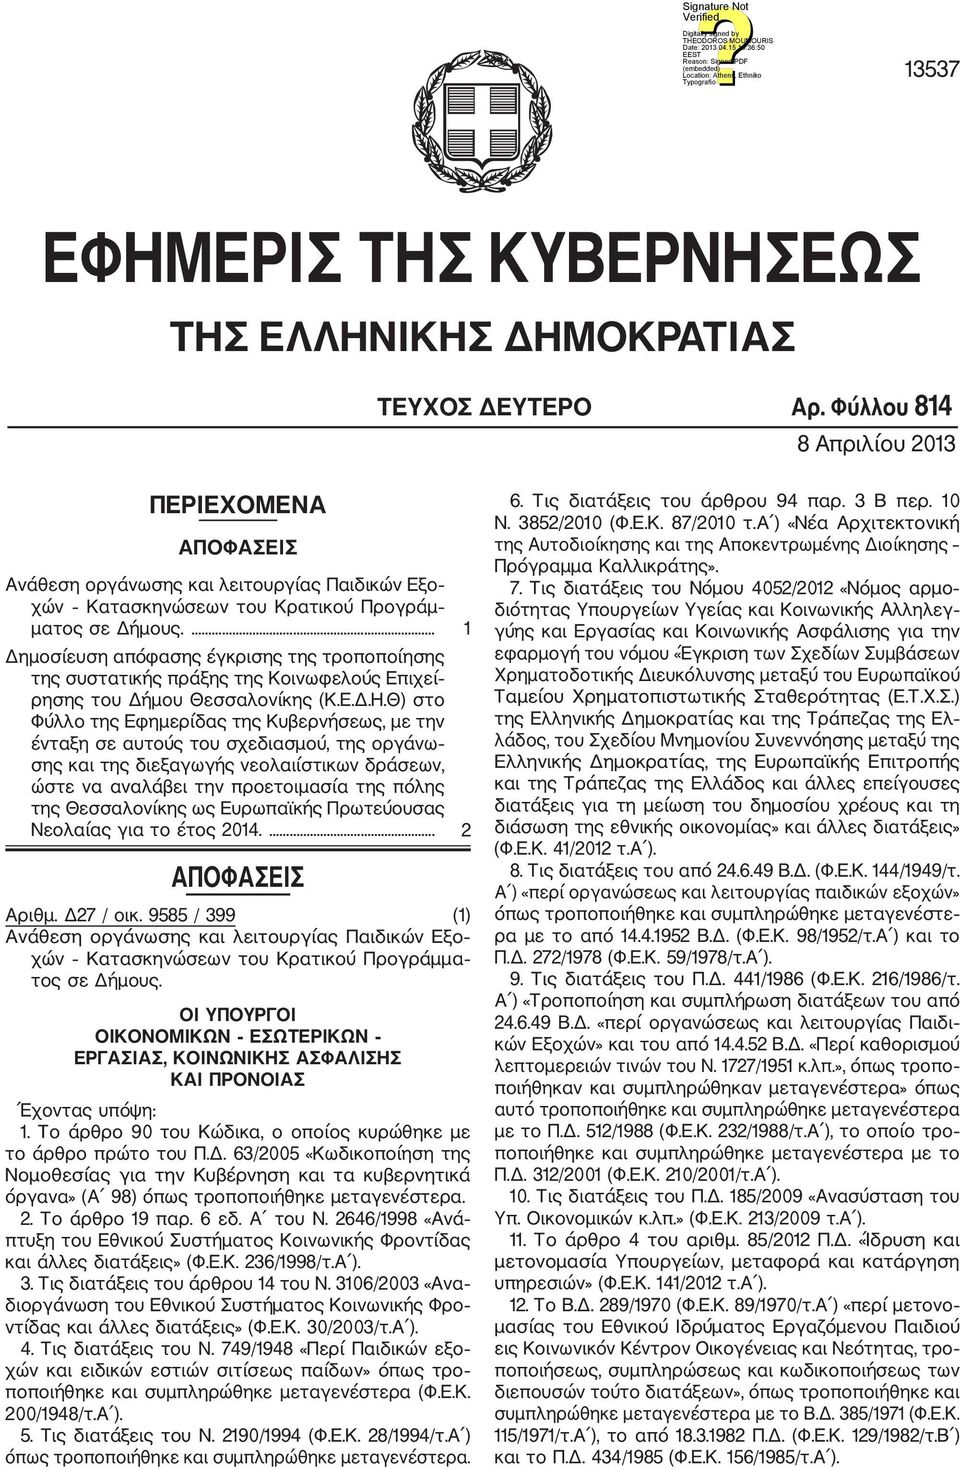 ... 1 Δημοσίευση απόφασης έγκρισης της τροποποίησης της συστατικής πράξης της Κοινωφελούς Επιχεί ρησης του Δήμου Θεσσαλονίκης (Κ.Ε.Δ.Η.